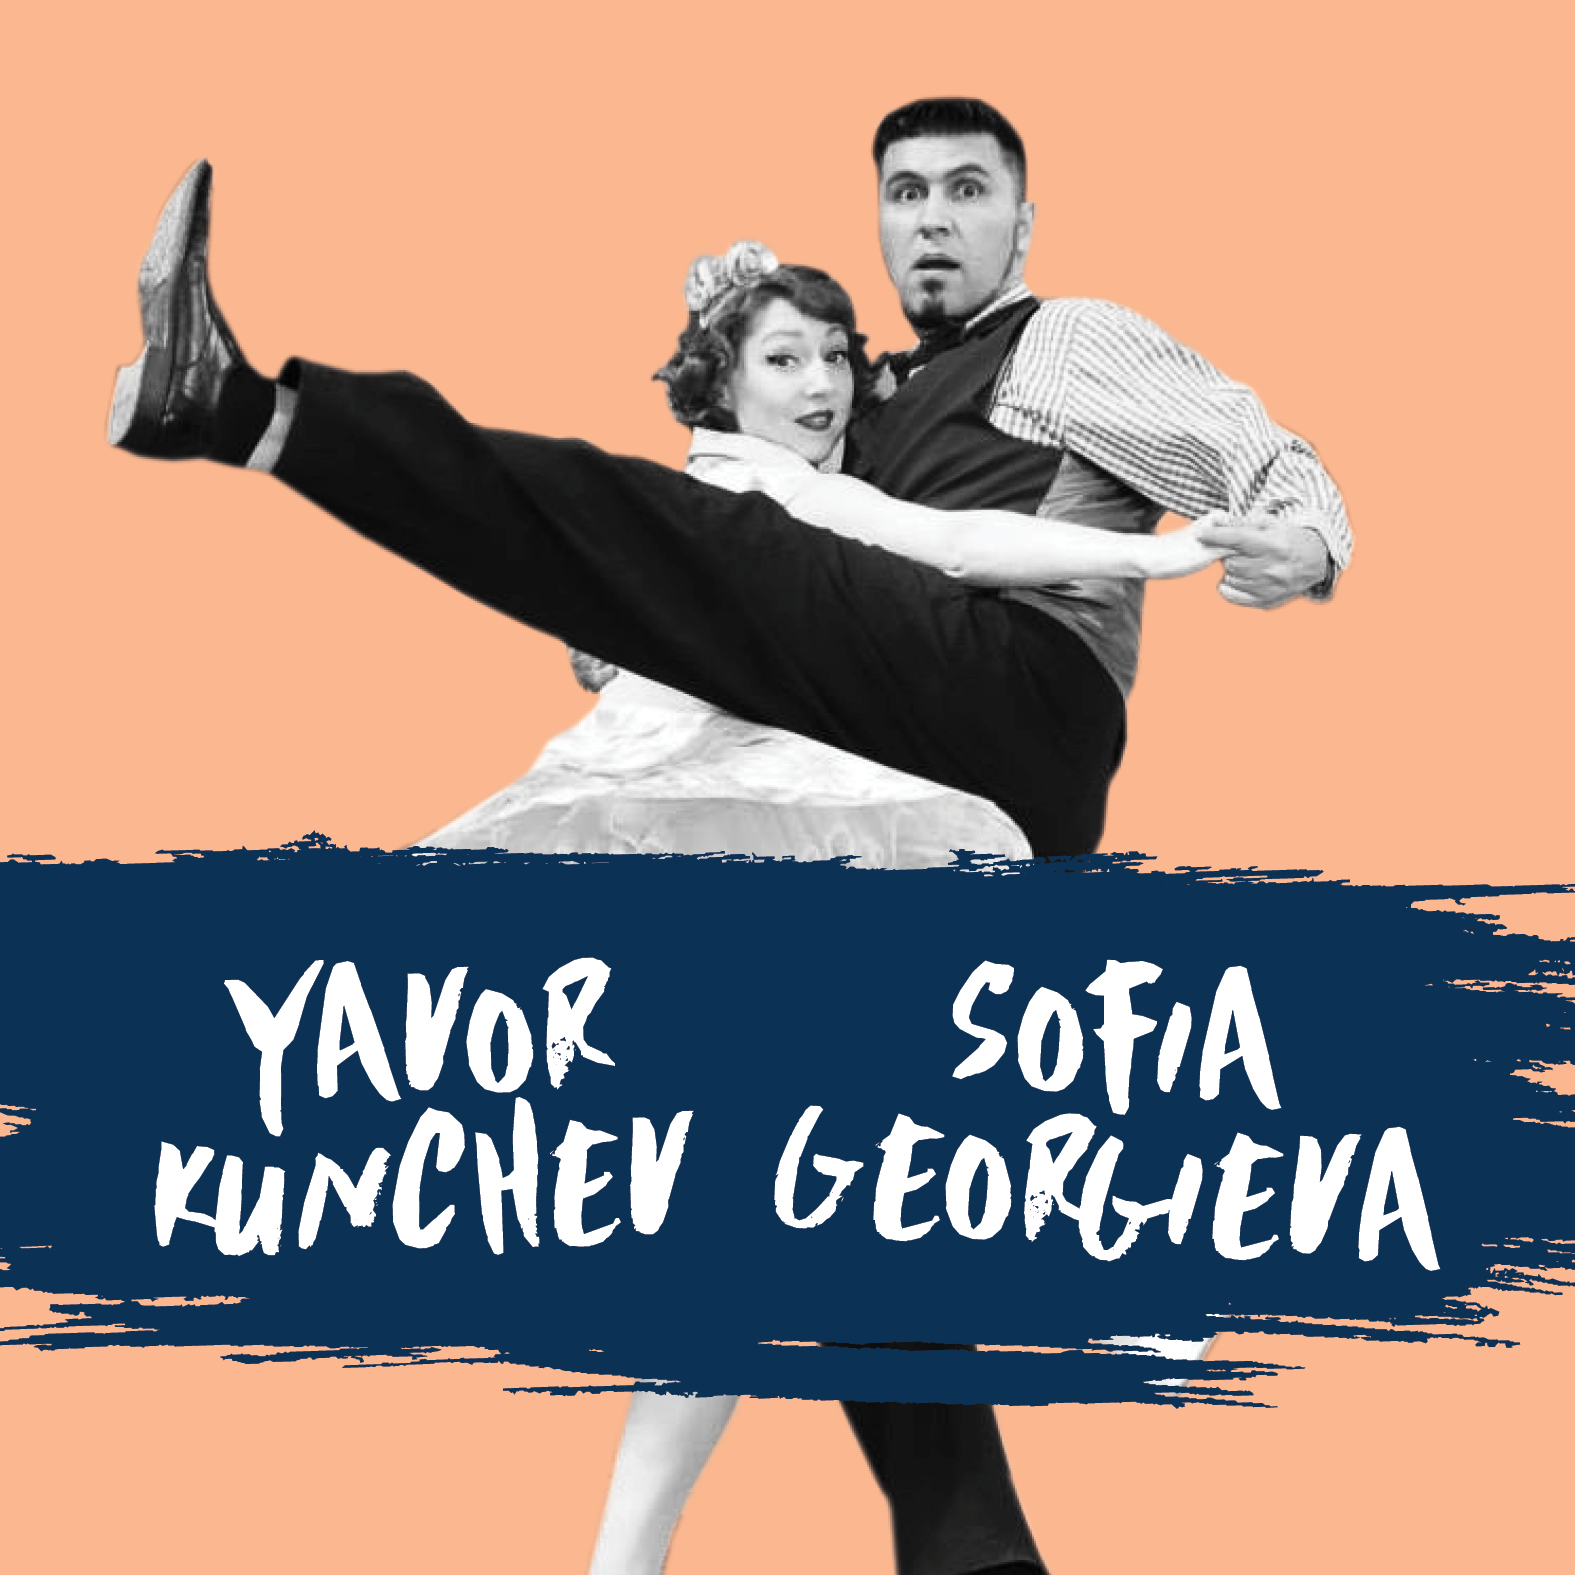 Yavor Kunchev & Sofia Georgieva